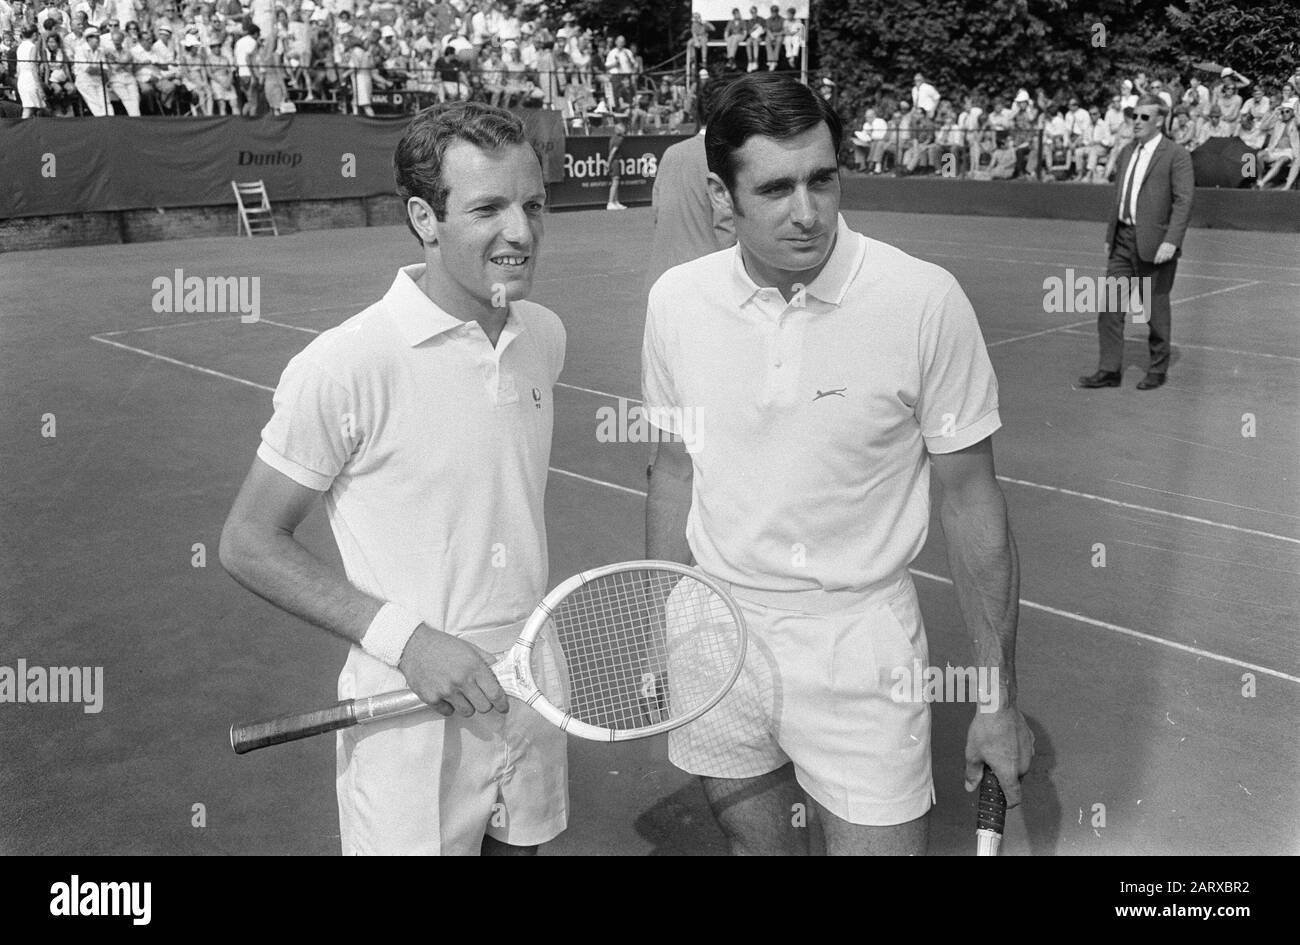 Roger taylor tennis Banque d'images noir et blanc - Alamy